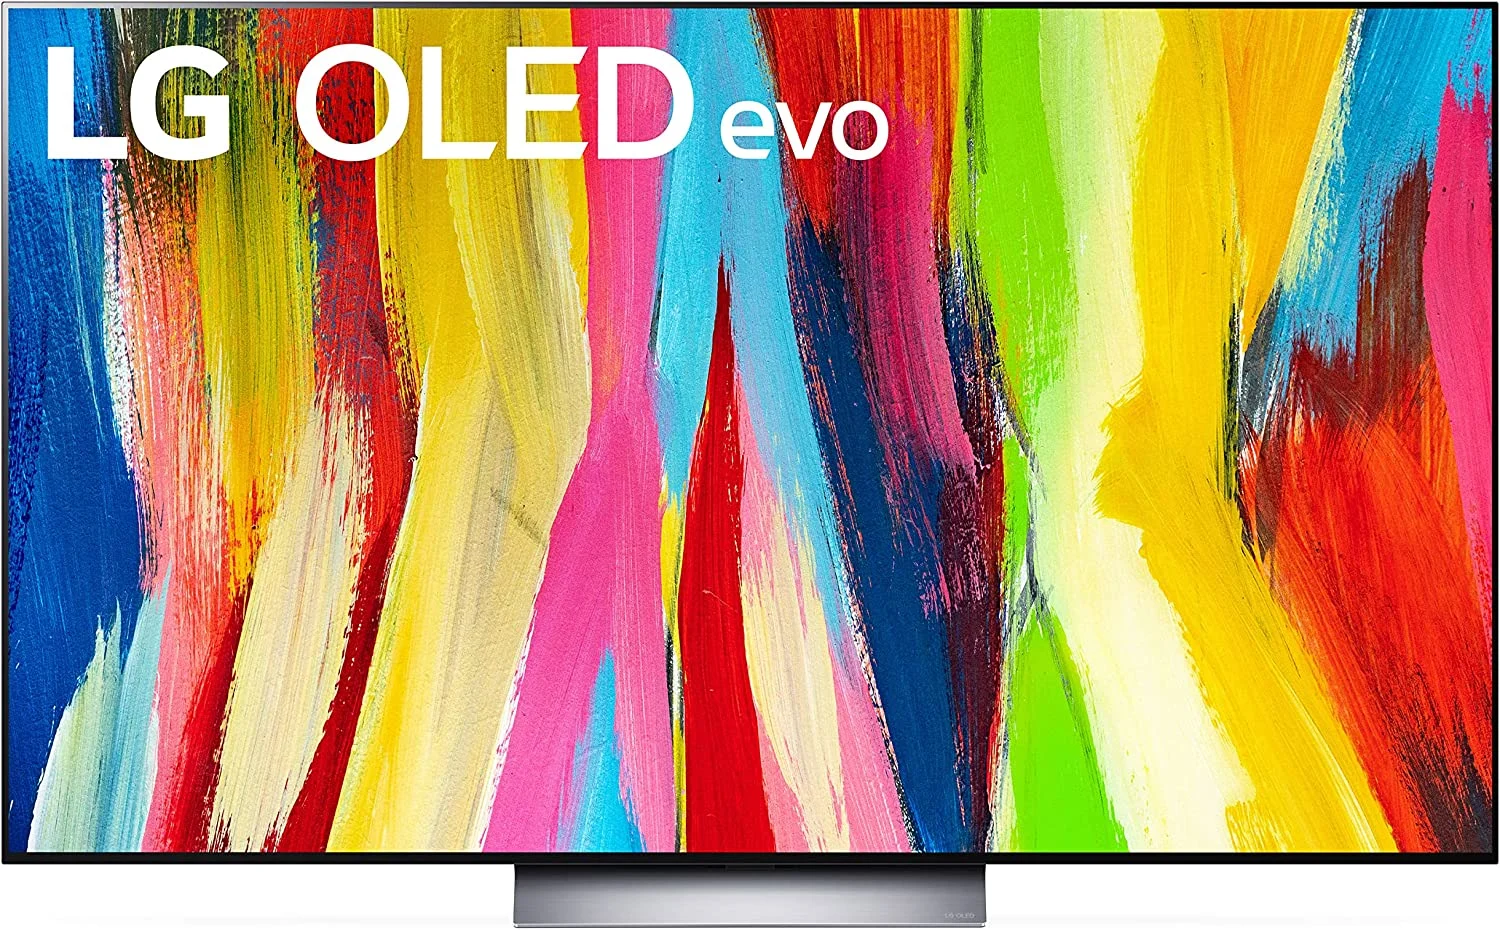 LG's C2 OLED TV.